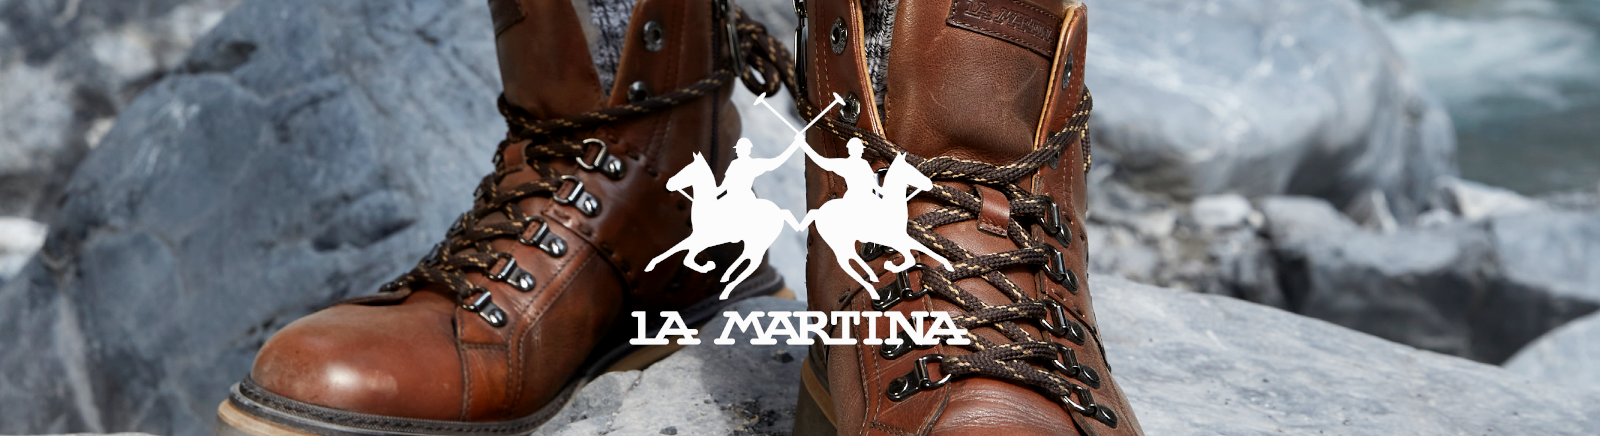 La Martina Schuhe online kaufen im Shop von Prange